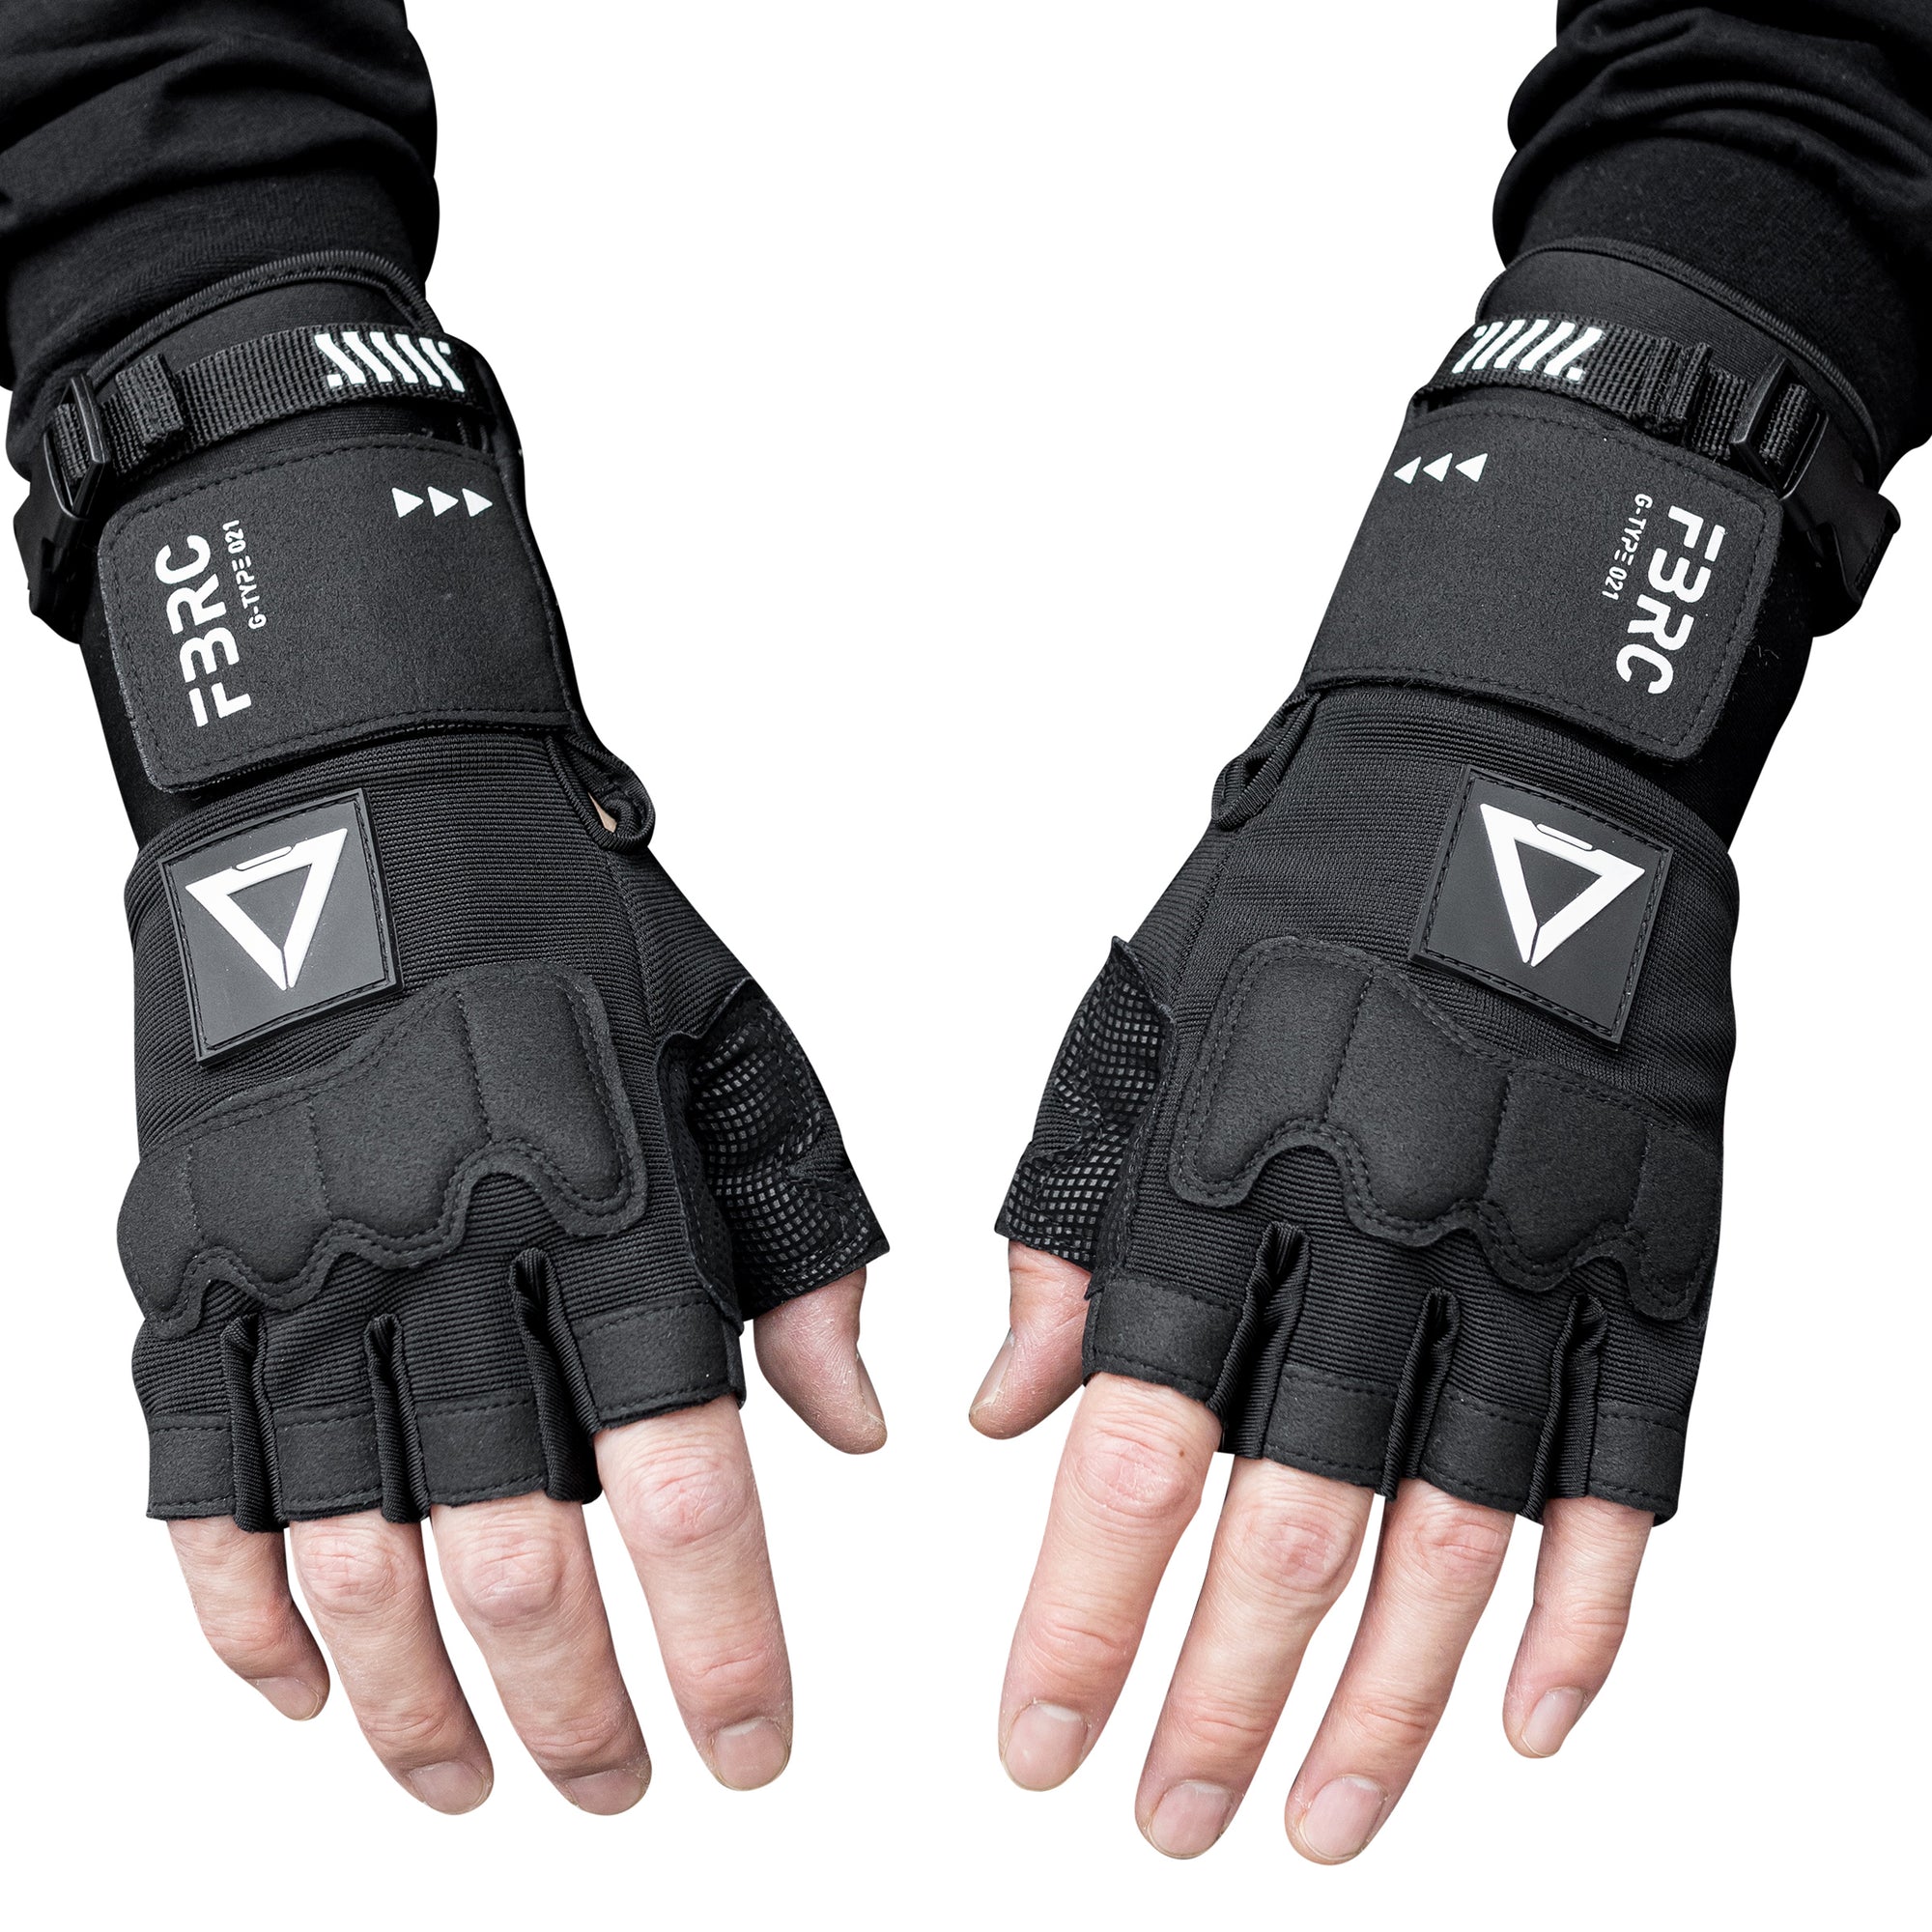 G-Type 021 Black Gauntlet Gloves